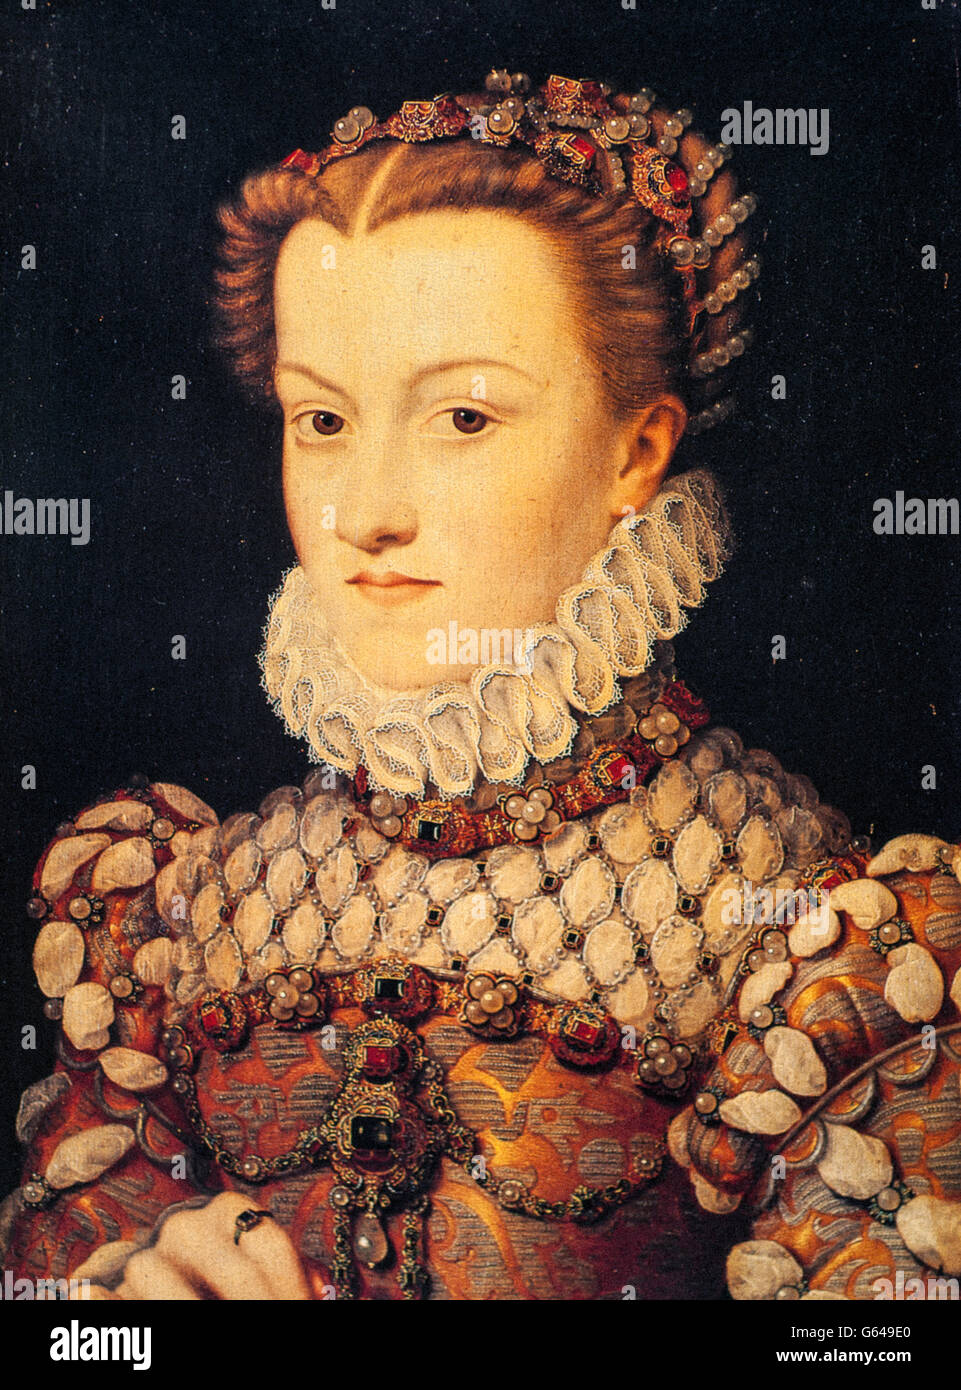 1570 - Elisabeth d'Autriche par François Clouet,France, Paris, Musée du Louvre.France, Paris, Musée du Louvre -France, Paris, Musée du Louvre Banque D'Images